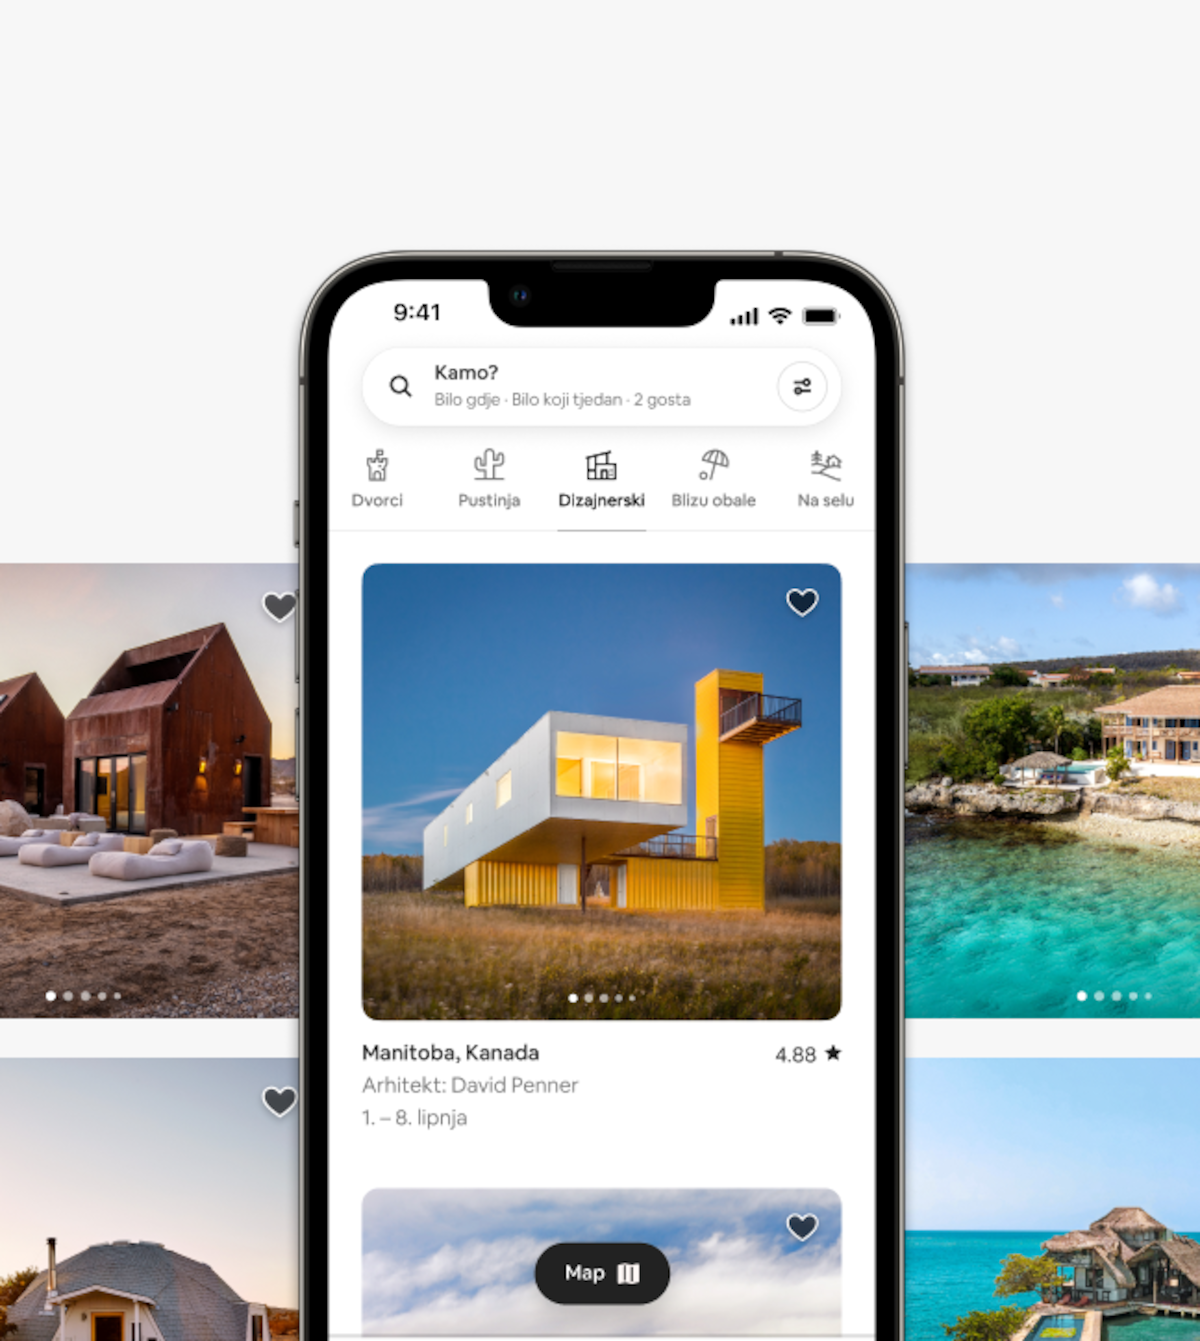 Slika pametnog telefona prikazuje potpuno novi dizajn Airbnba, koji se temelji na kategorijama Airbnb smještaja.